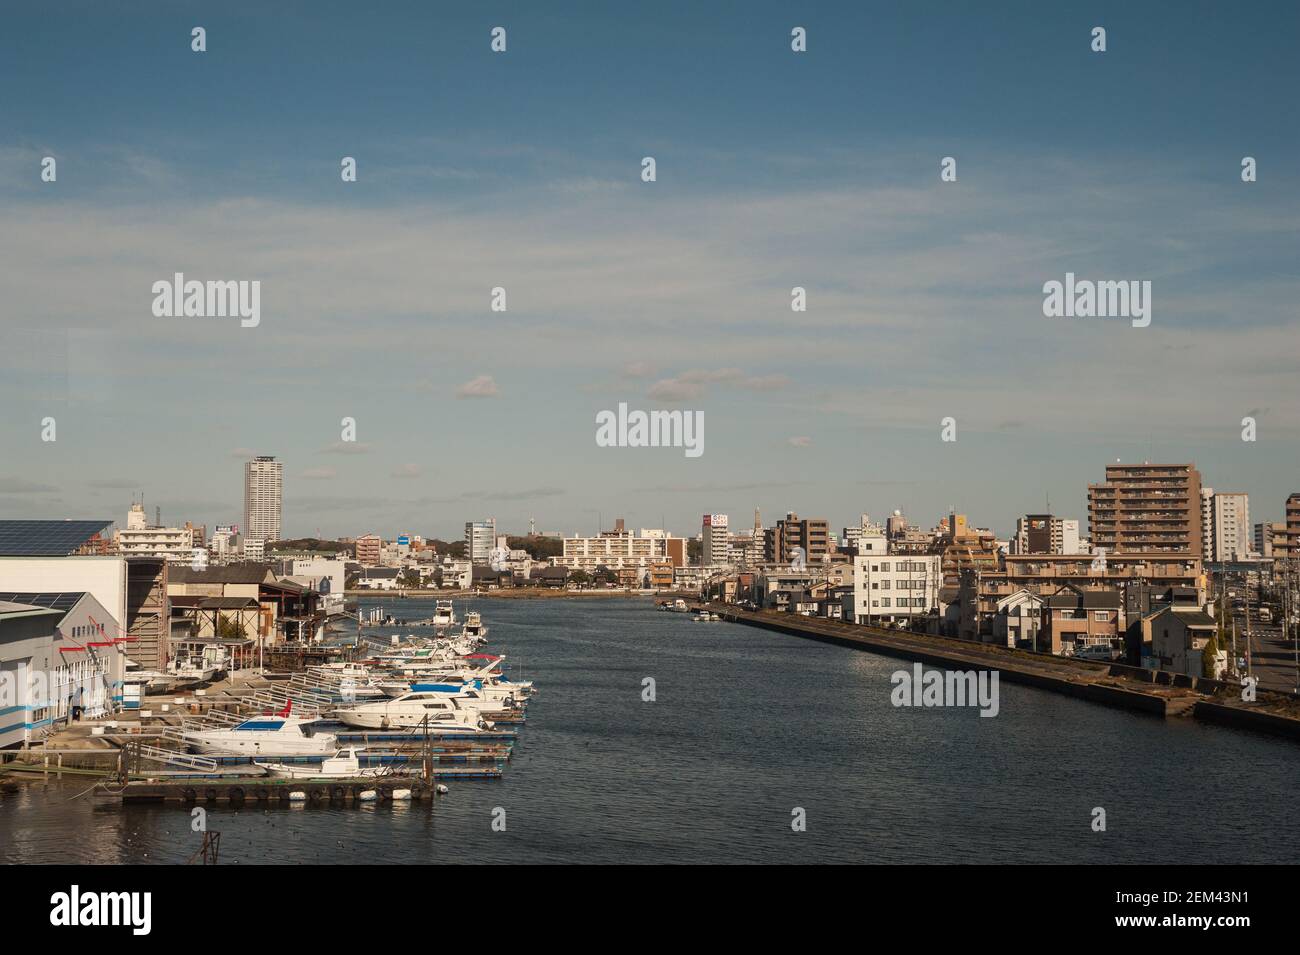 30,12.2017, Nagoya, Aichi, Japan, Asien - Stadtbild der japanischen Metropole mit dem Hori-Fluss. Stockfoto